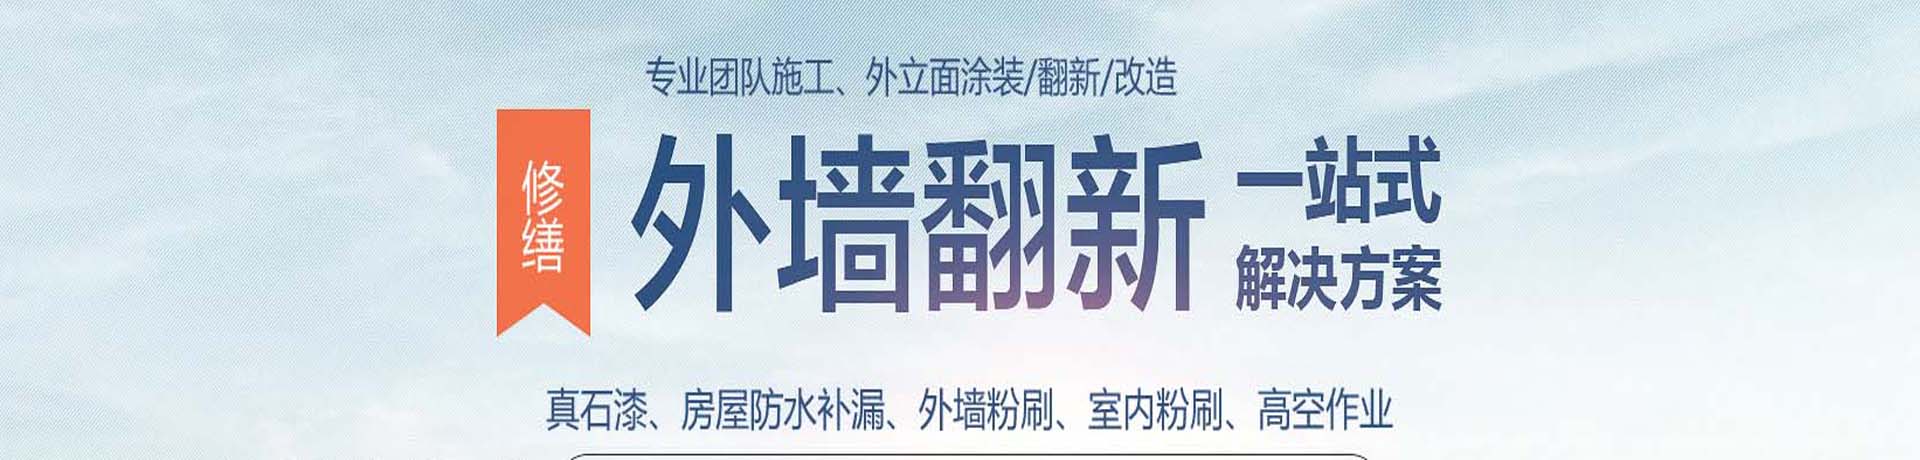 上海外墙高空涂料粉刷,外墙真石漆施工,上海外墙翻新公司,专业的墙面涂刷服务-上海物美环境工程有限公司 - 【推荐 - 涂料常识